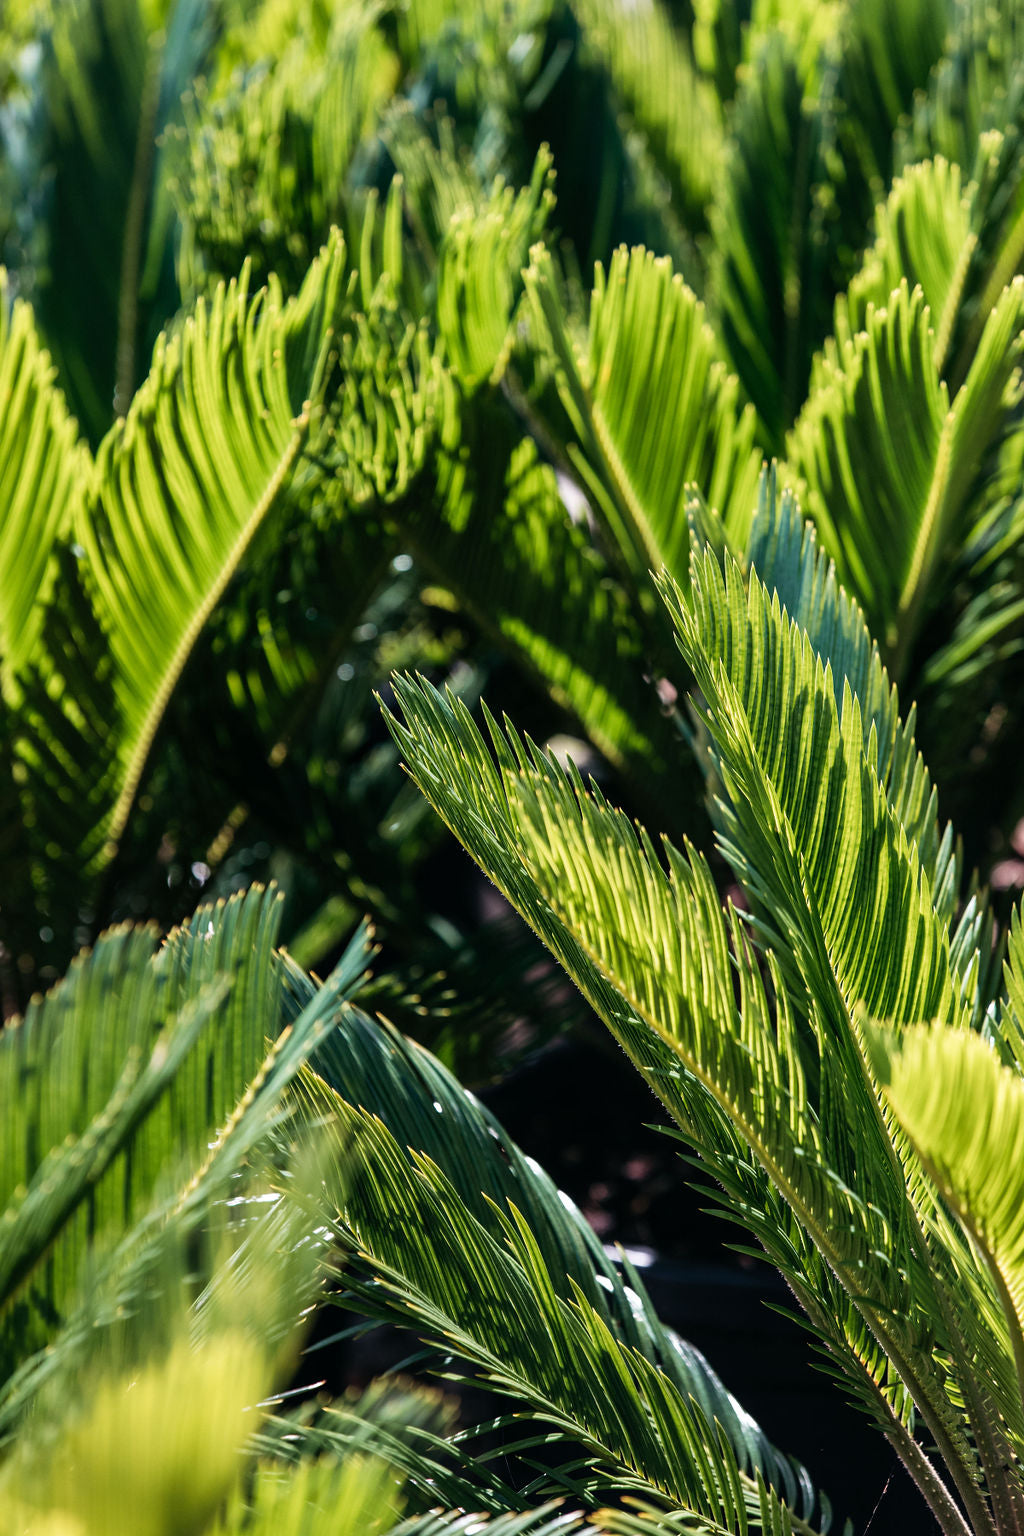 Cycad - Sago Palm (Cycas revoluta)